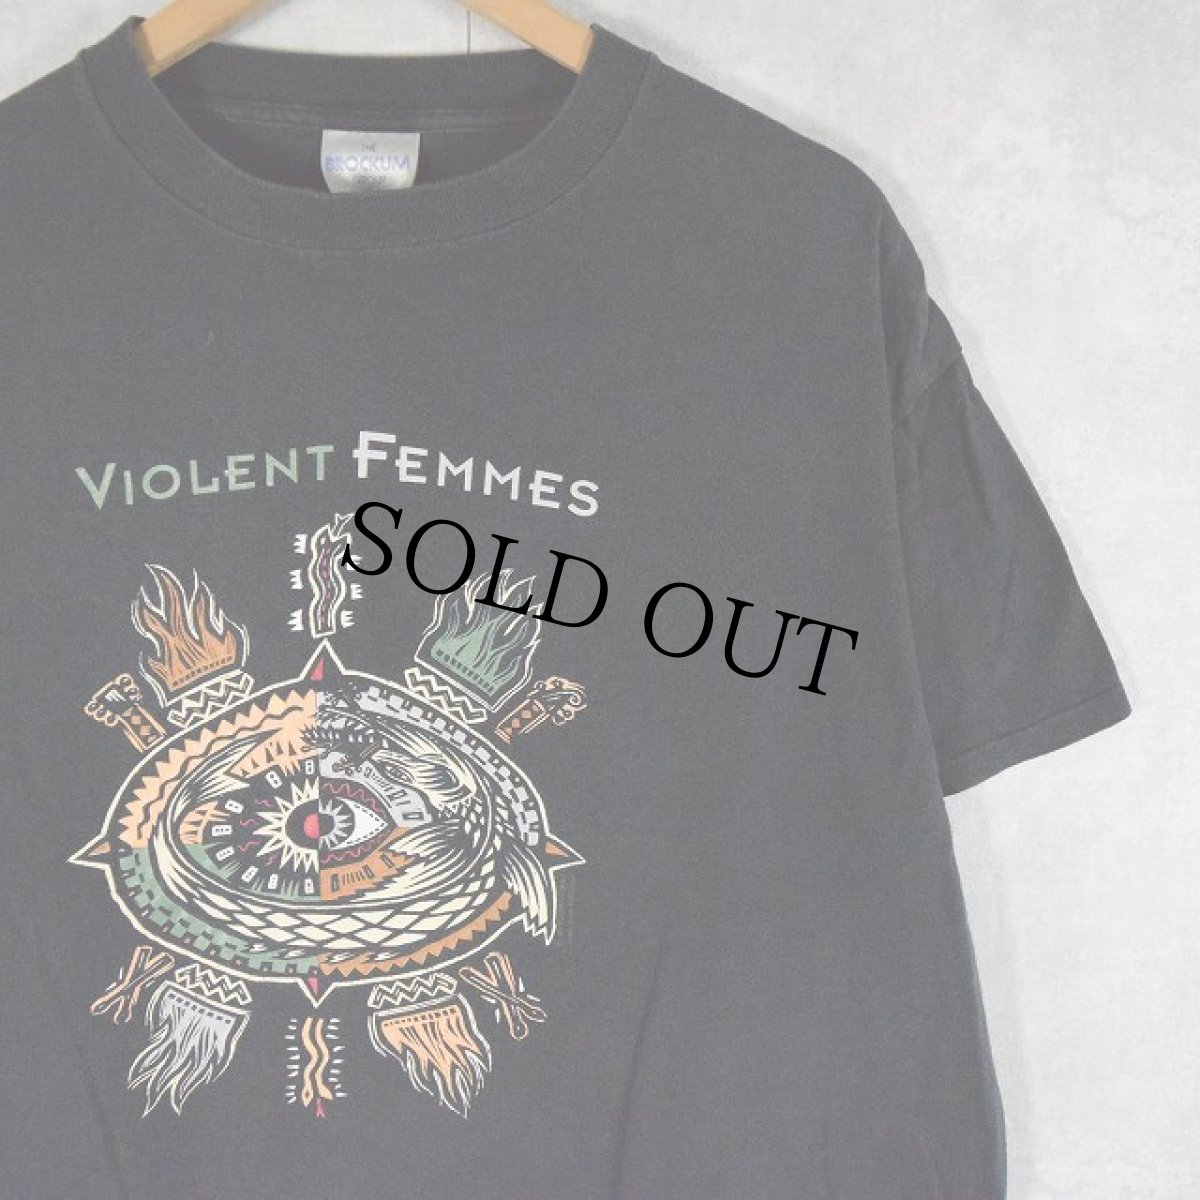 画像1: 90's VIOLENT FEMMES USA製 フォークパンクバンドTシャツ XL (1)